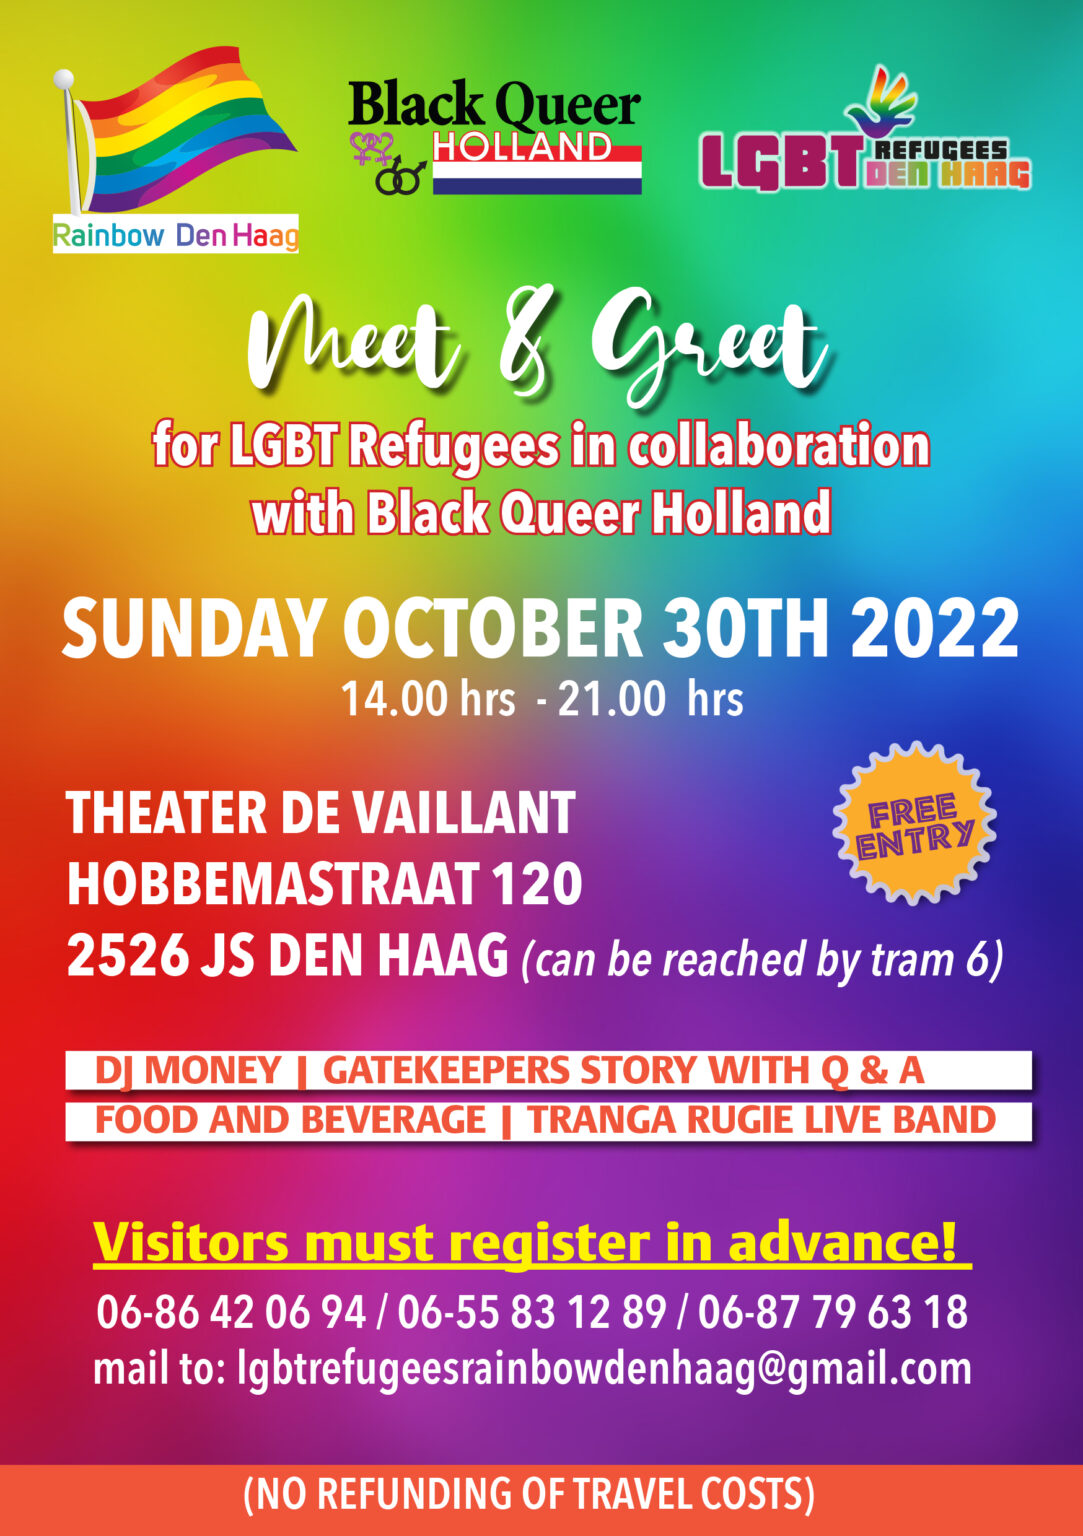 Flyer voor de Meet & Greet LGBT Refugees oktober 2022 editie. Logo's van Rainbow Den Haag, Black Queer Holland en de LGBT Refugees Den Haag staan samen met een enorme lap tekst tegen een regenboog gekleurde achtergrond. Voor deze bijeenkomst is aanmelden verplicht. Het telefoonnummer waarop je kunt aanmelden is 06 86420694.